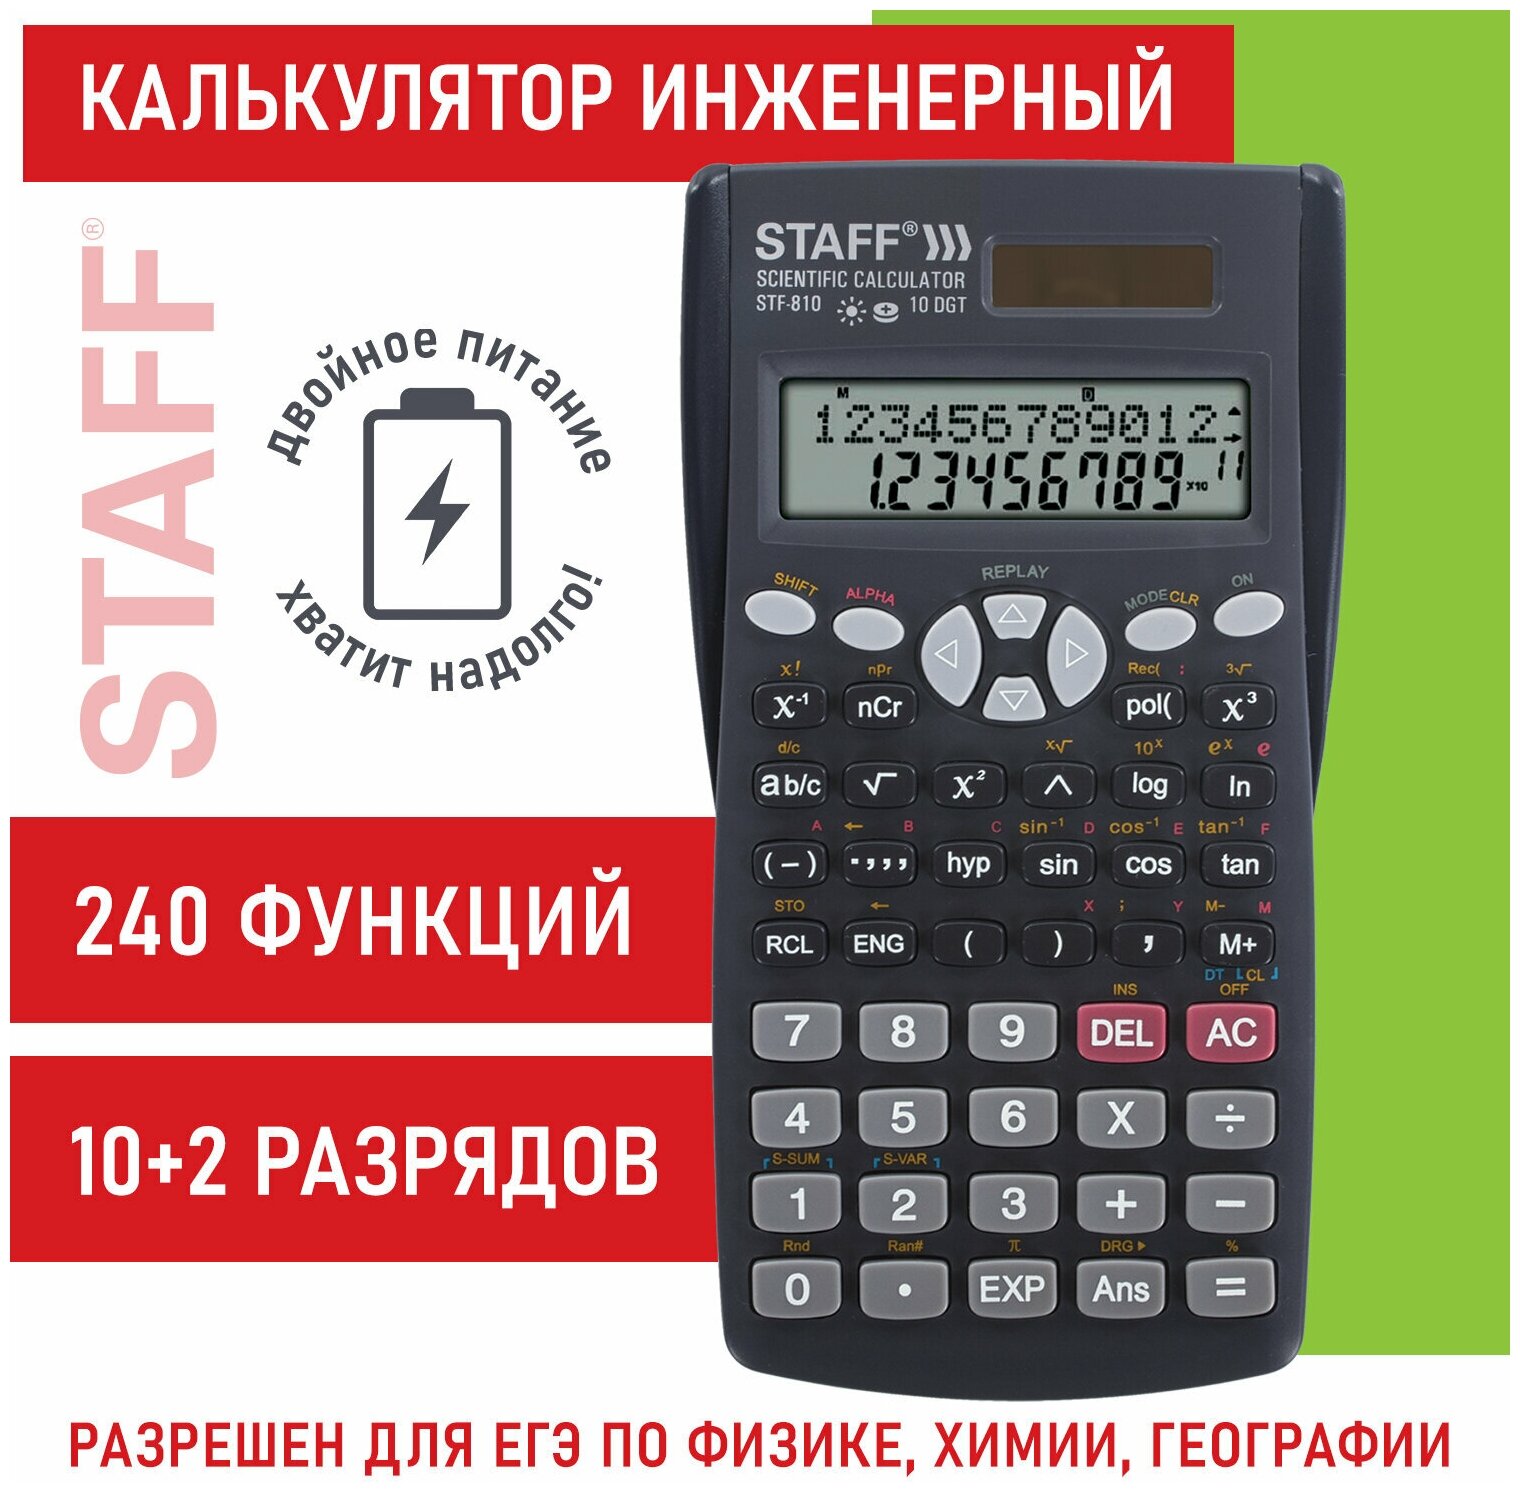 Калькулятор инженерный непрограммируемый научный двухстрочный Staff Stf-810 (161х85 мм), 240 функций, 10+2 разрядов, двойное питание, 250280